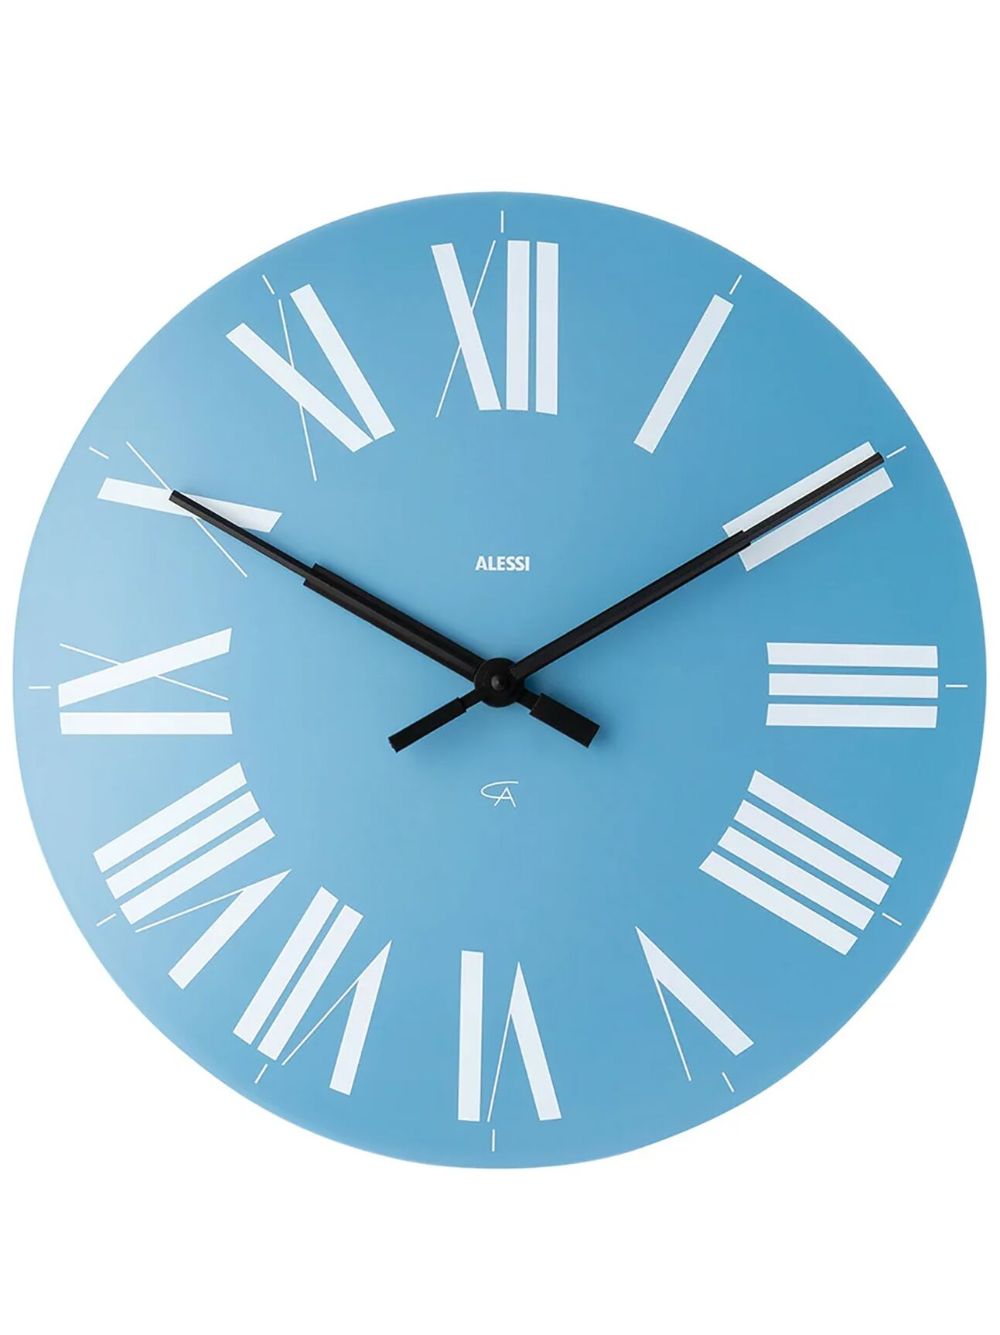 Часы that Light Blue. Alessi часы настенные крепеж. Contemporary Designers Clocks. Clock Blue Light купить. 7 часов света